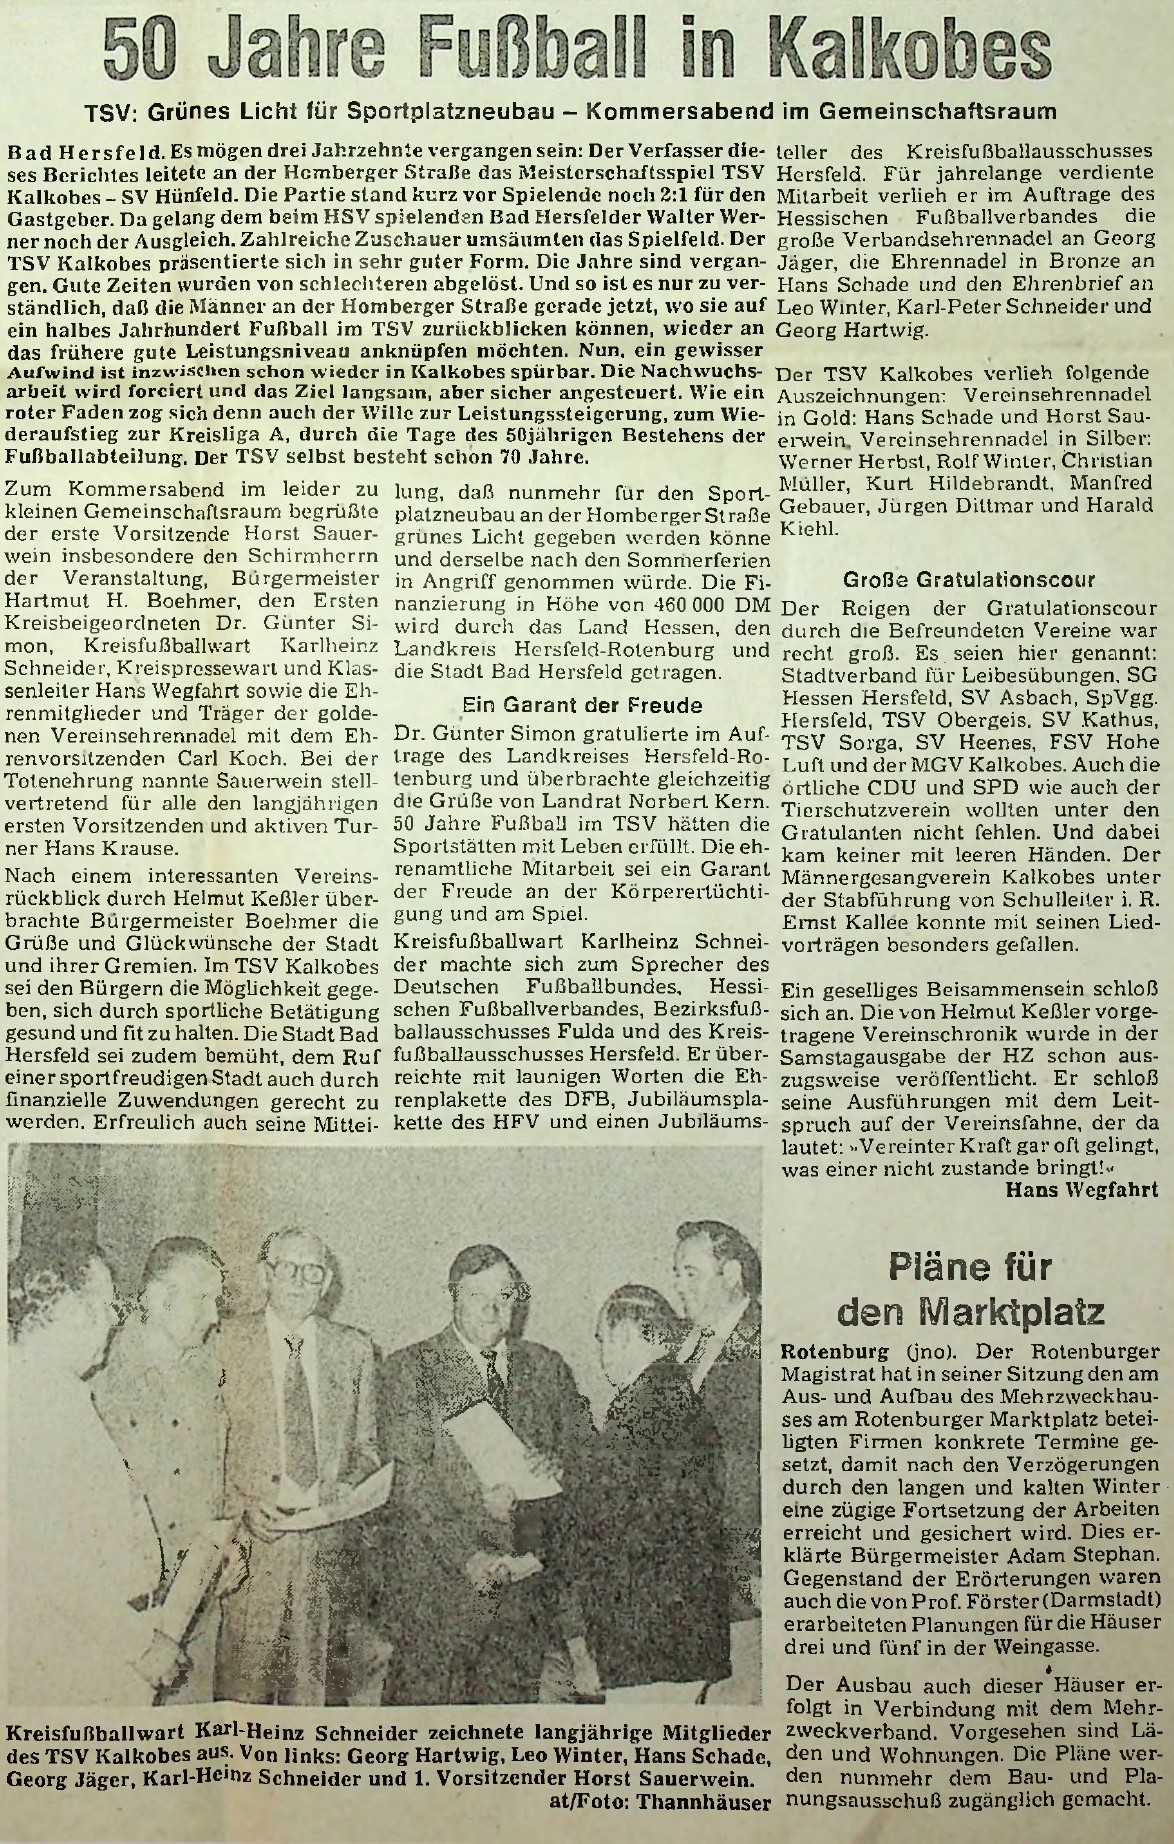 50 Jahre Fußball in Kalkobes (1979)